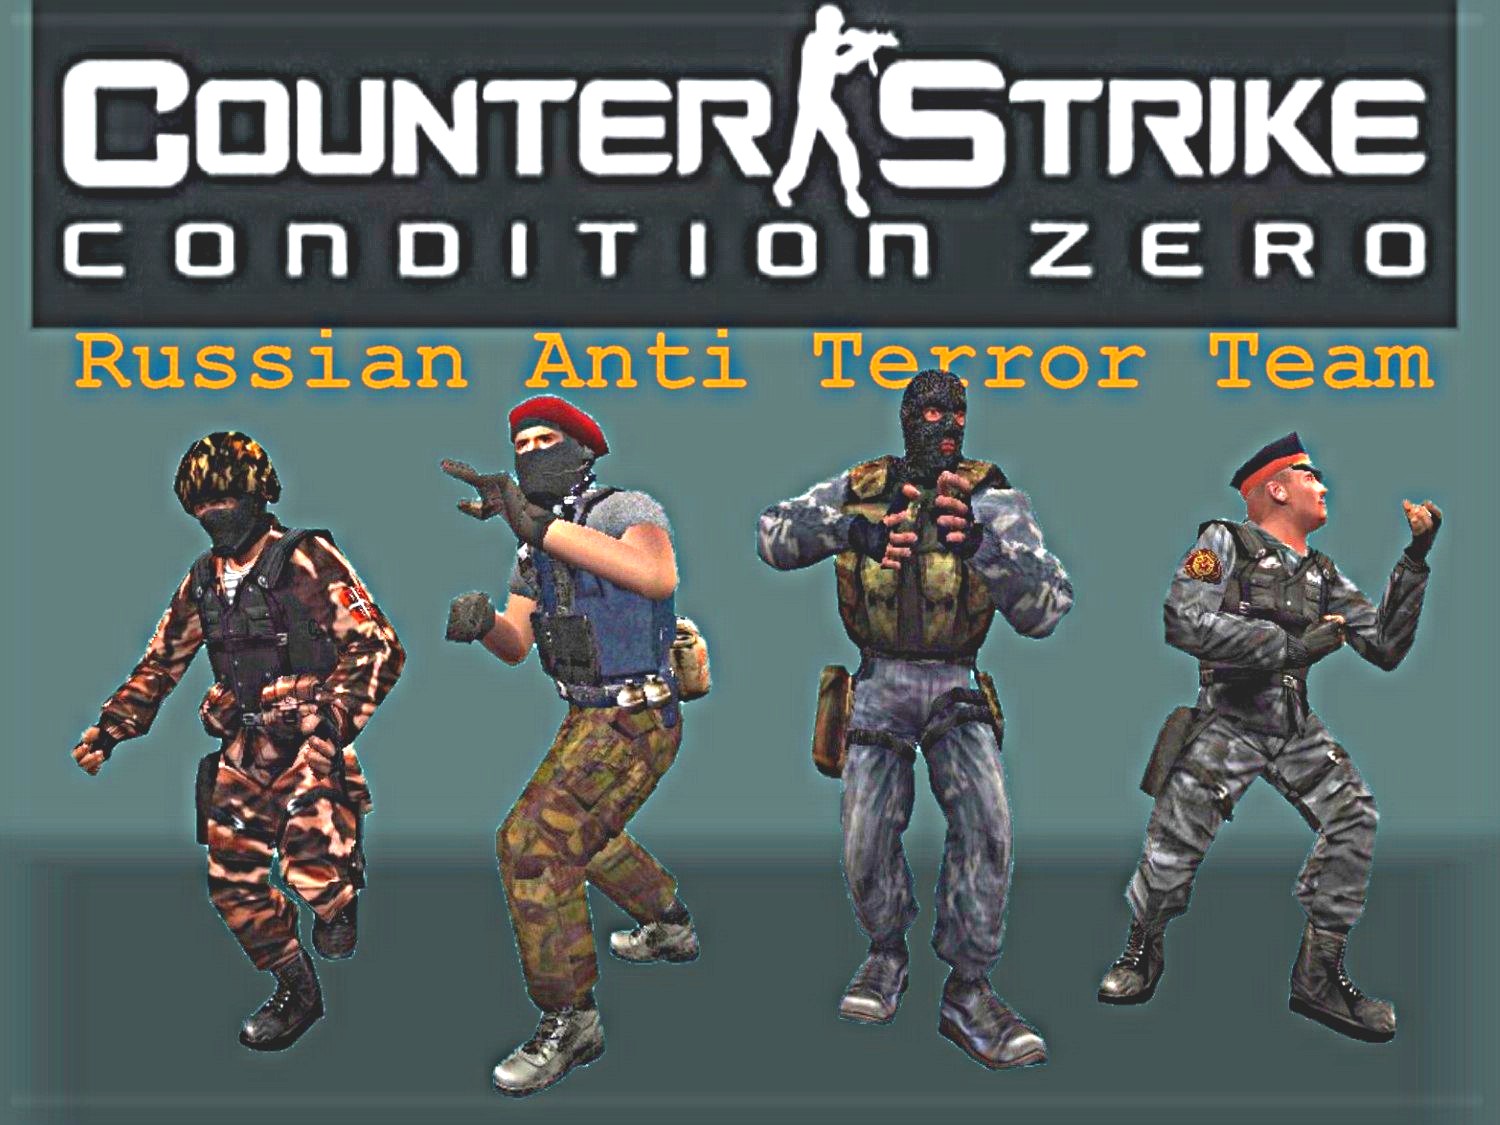 Counter-Strike: Condition Zero (2004)